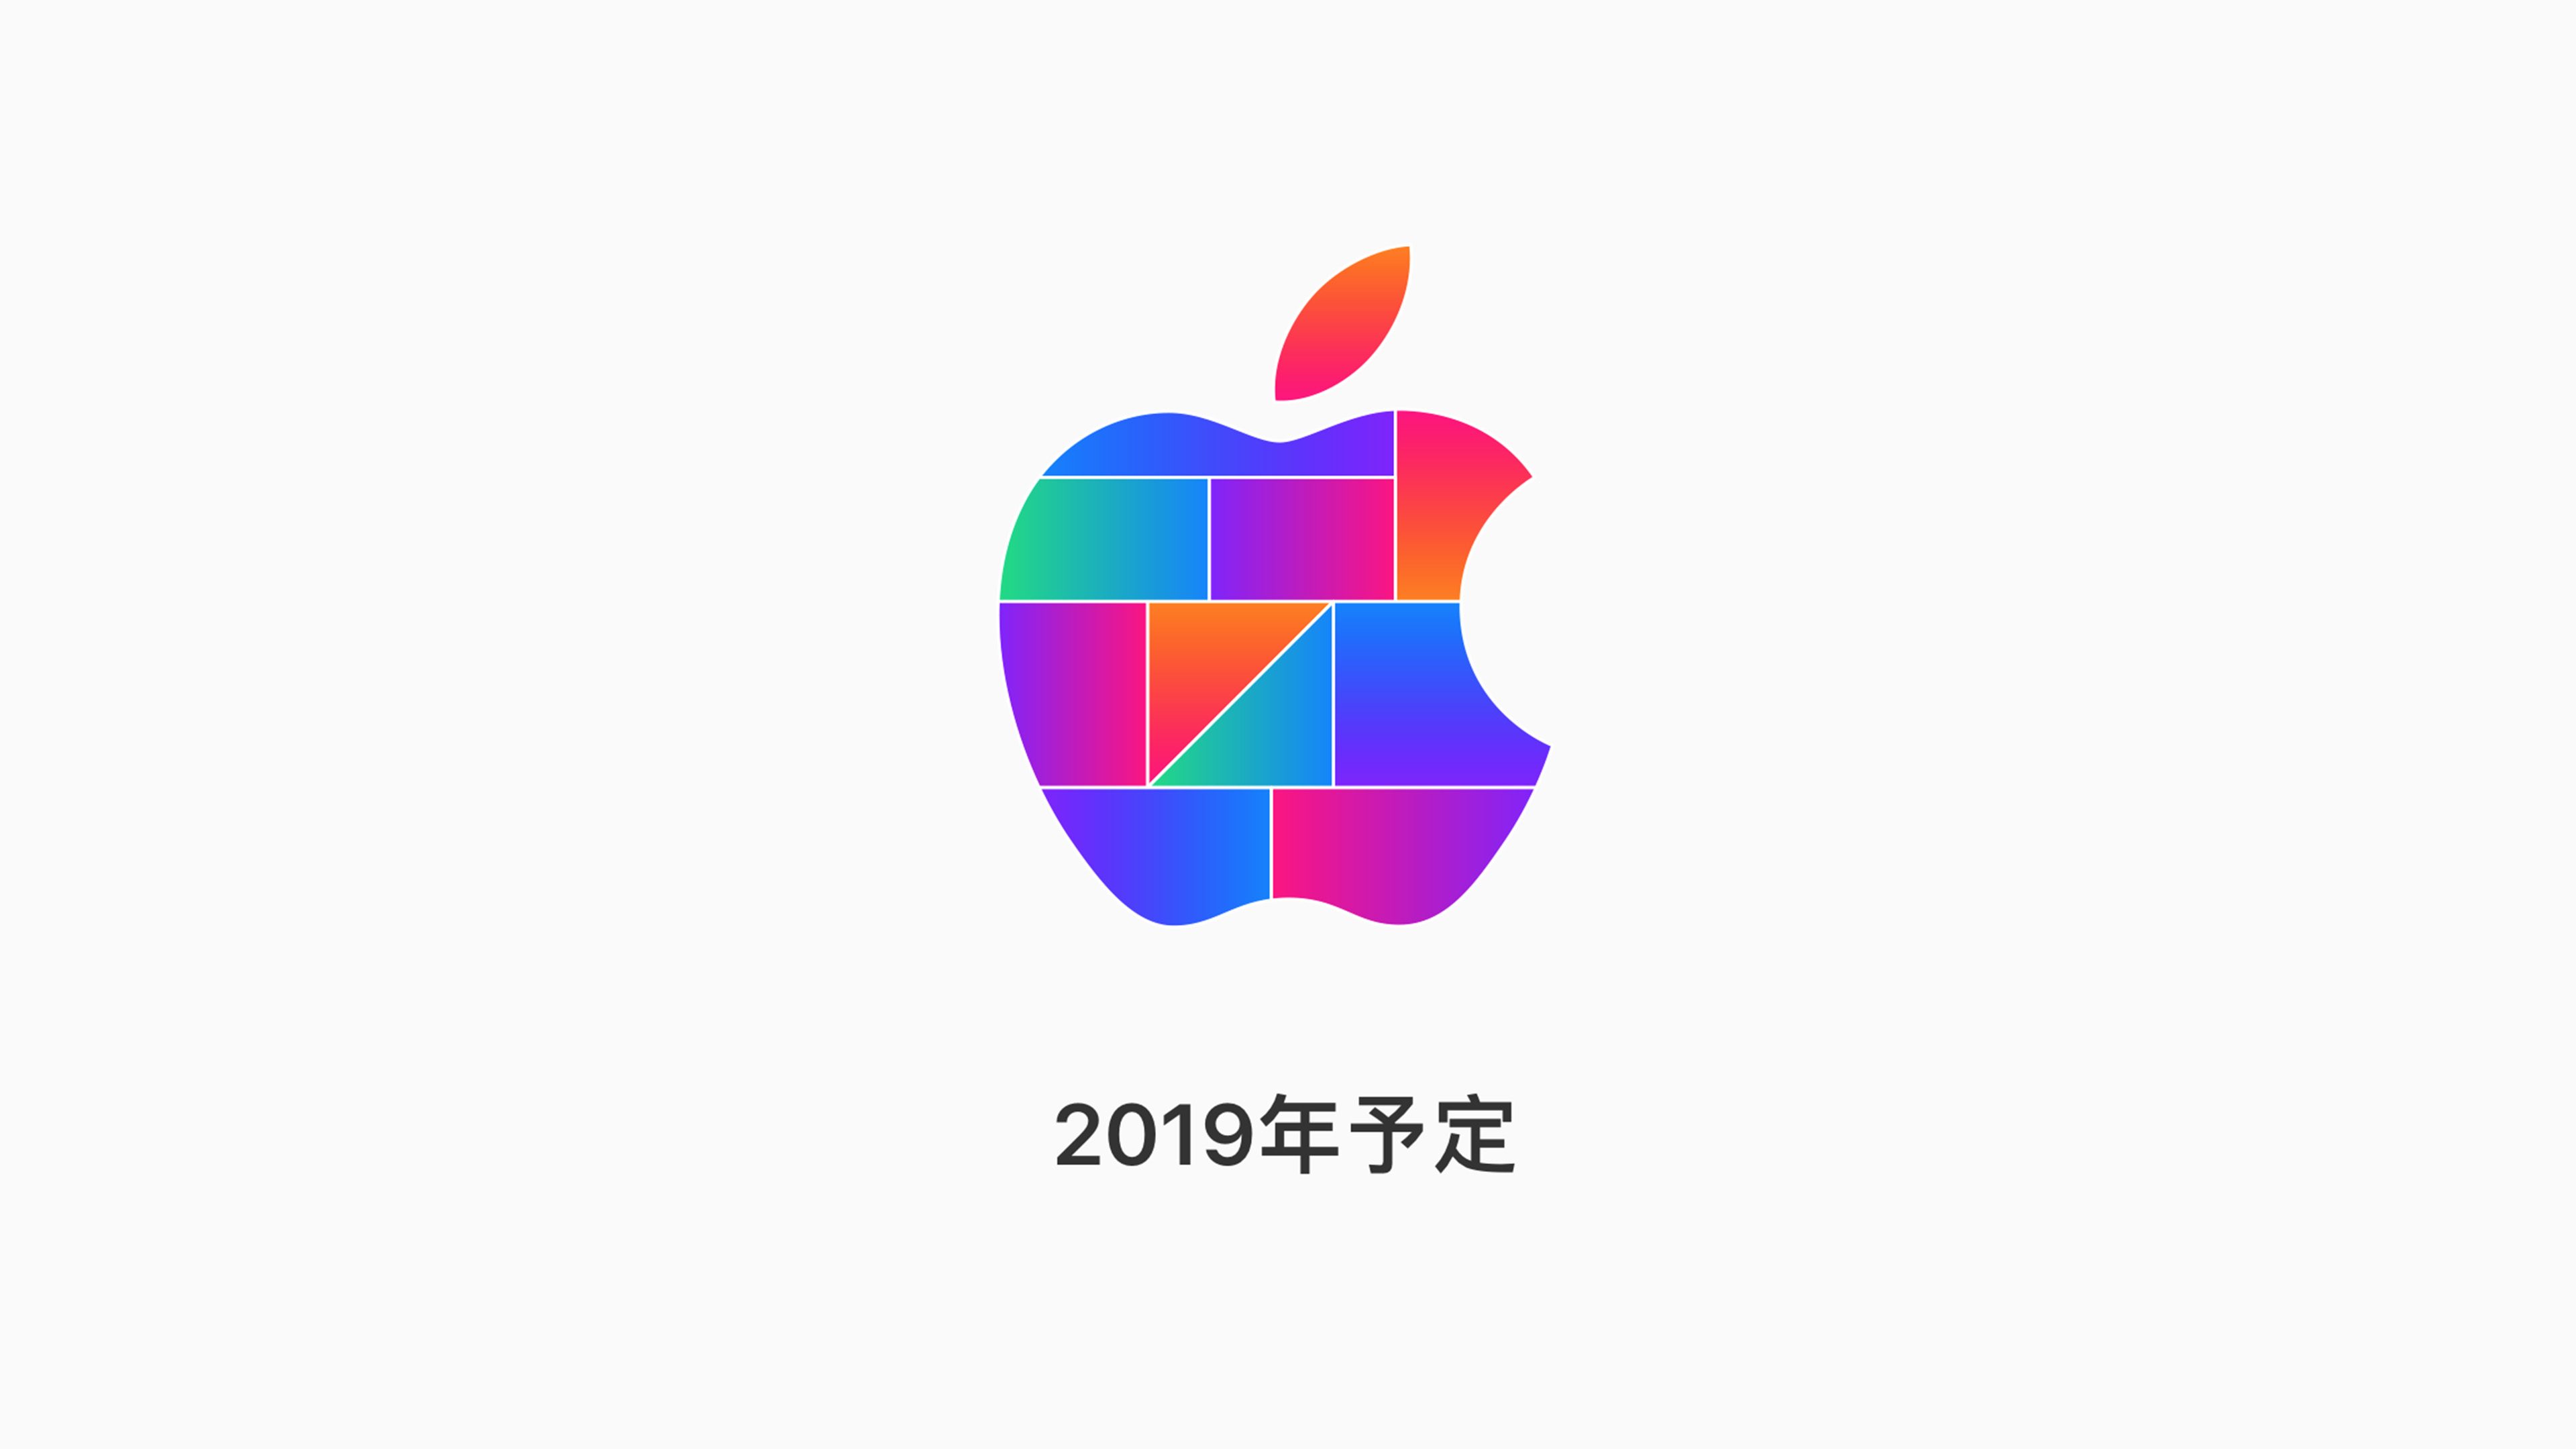 苹果发布日本新店预告 2019 开年第一家或落户神奈川